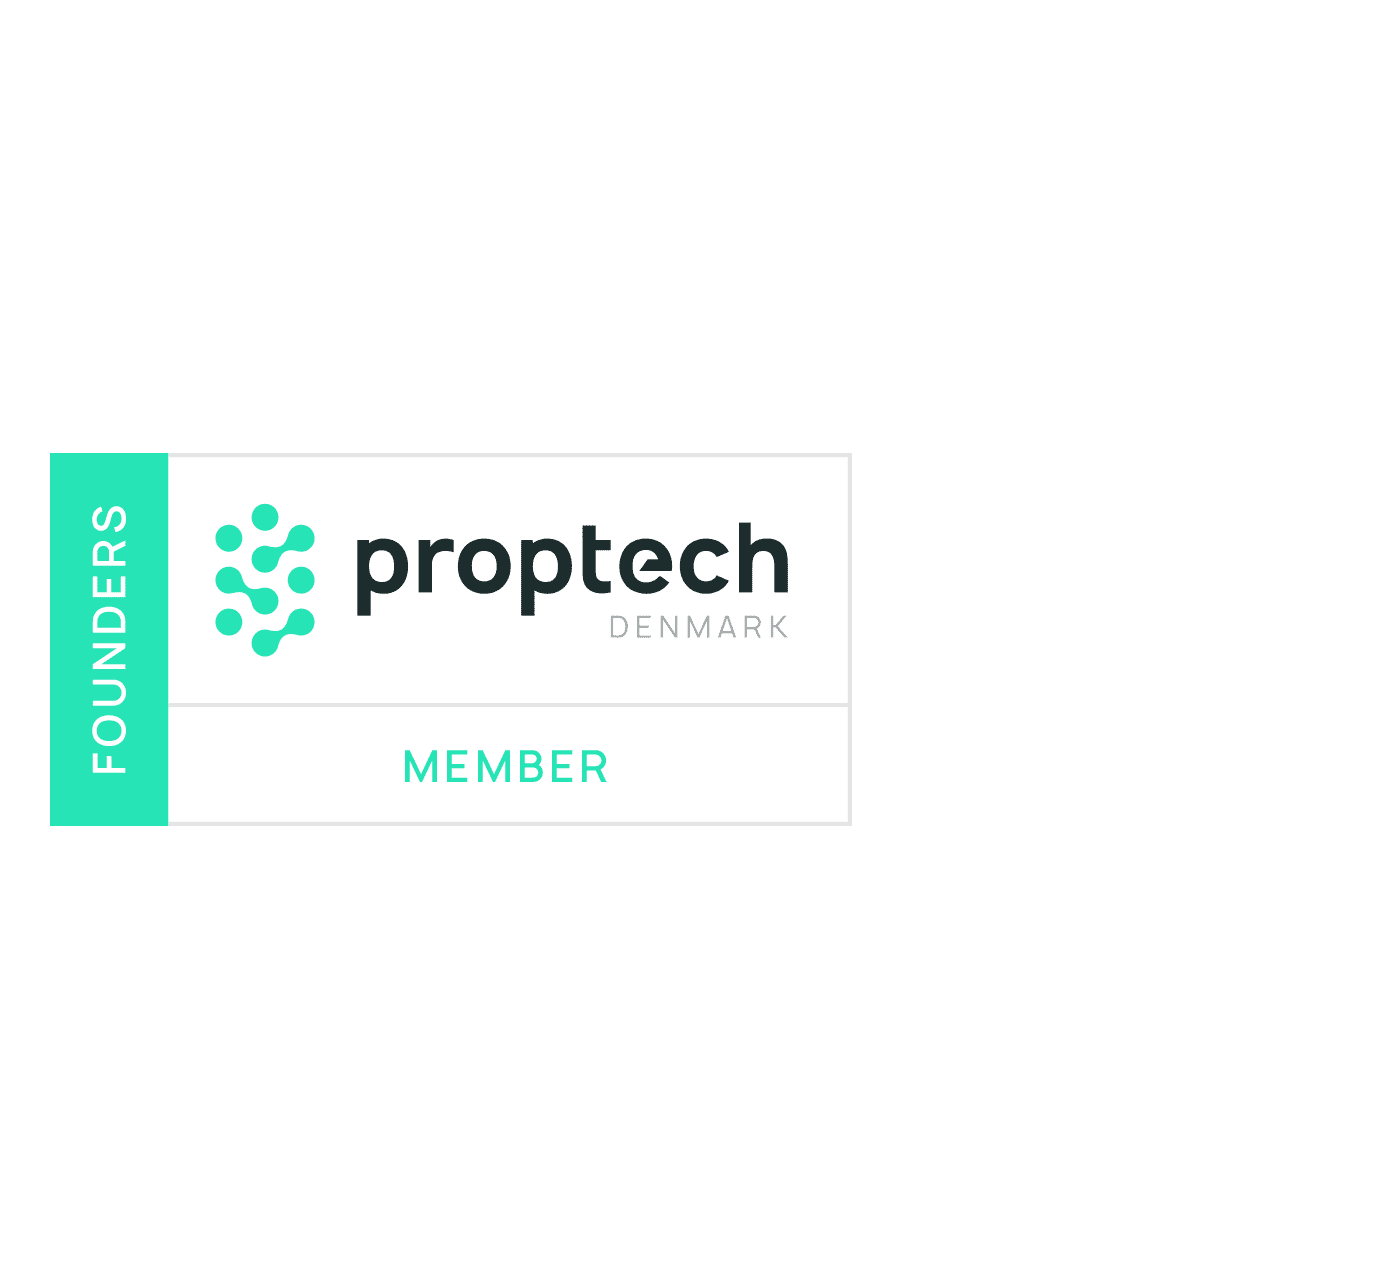 PropTech Denmark Founding Member